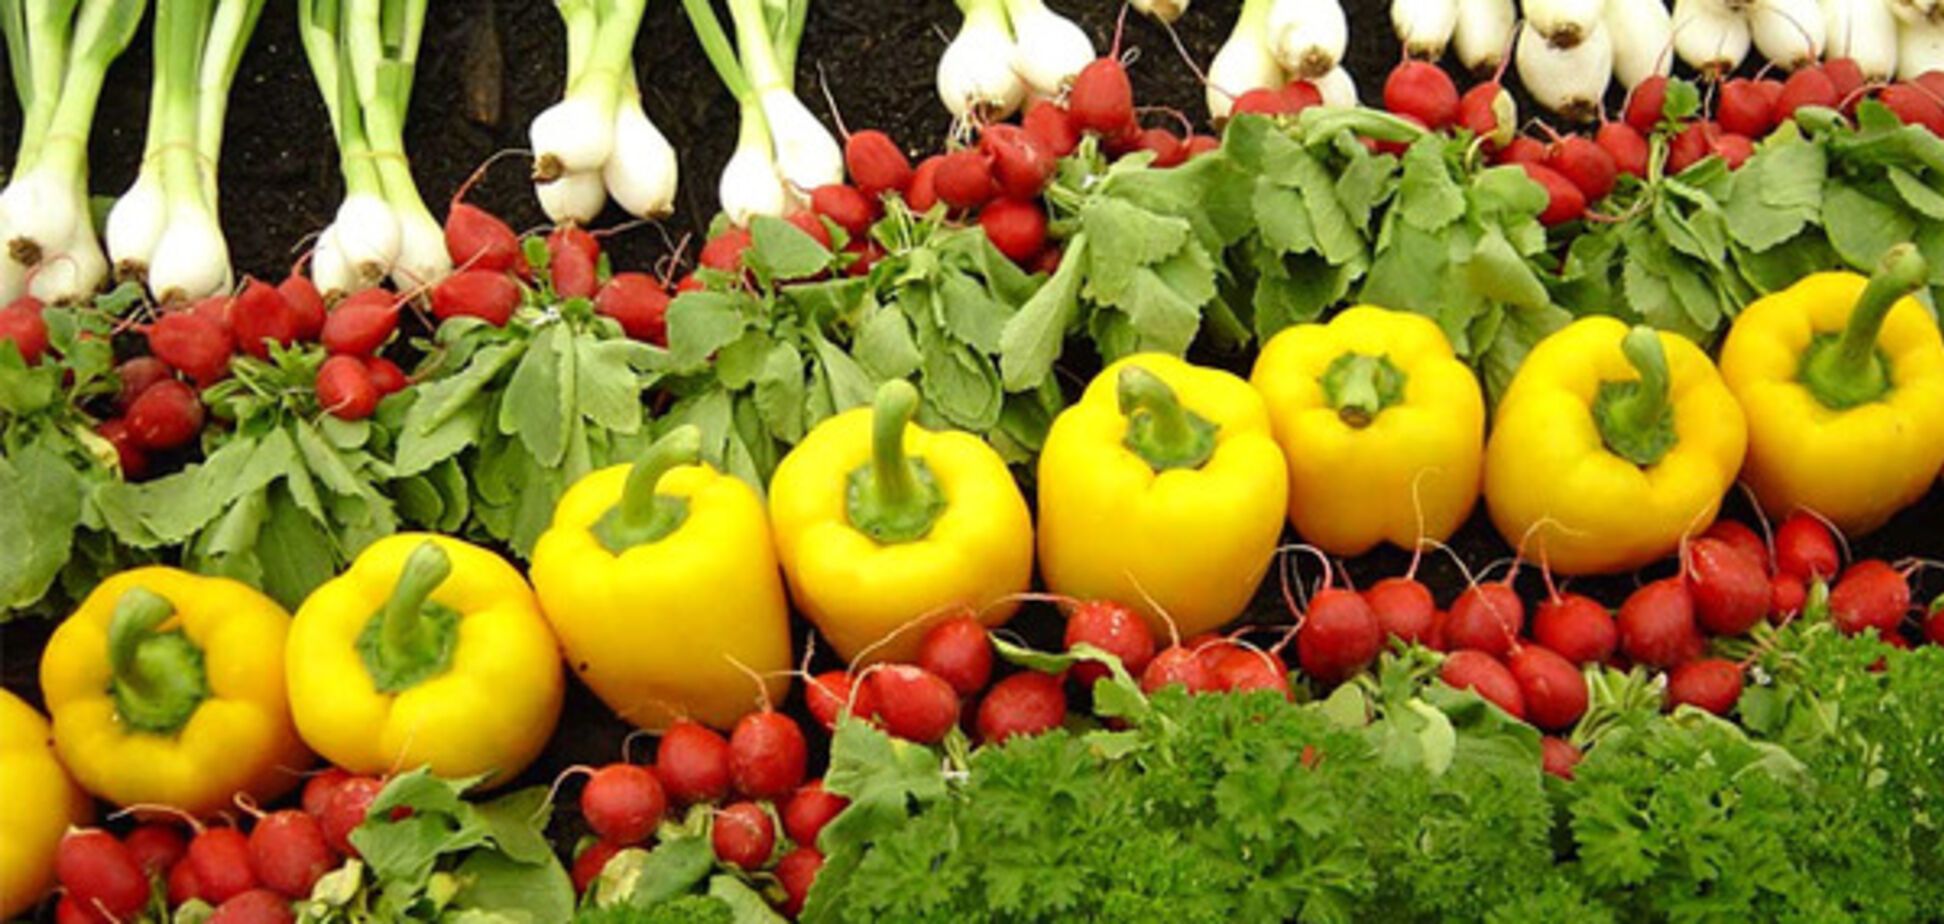 Внутрішнє споживання органічних продуктів цього року може сягнути 25 млн євро - Мінагро